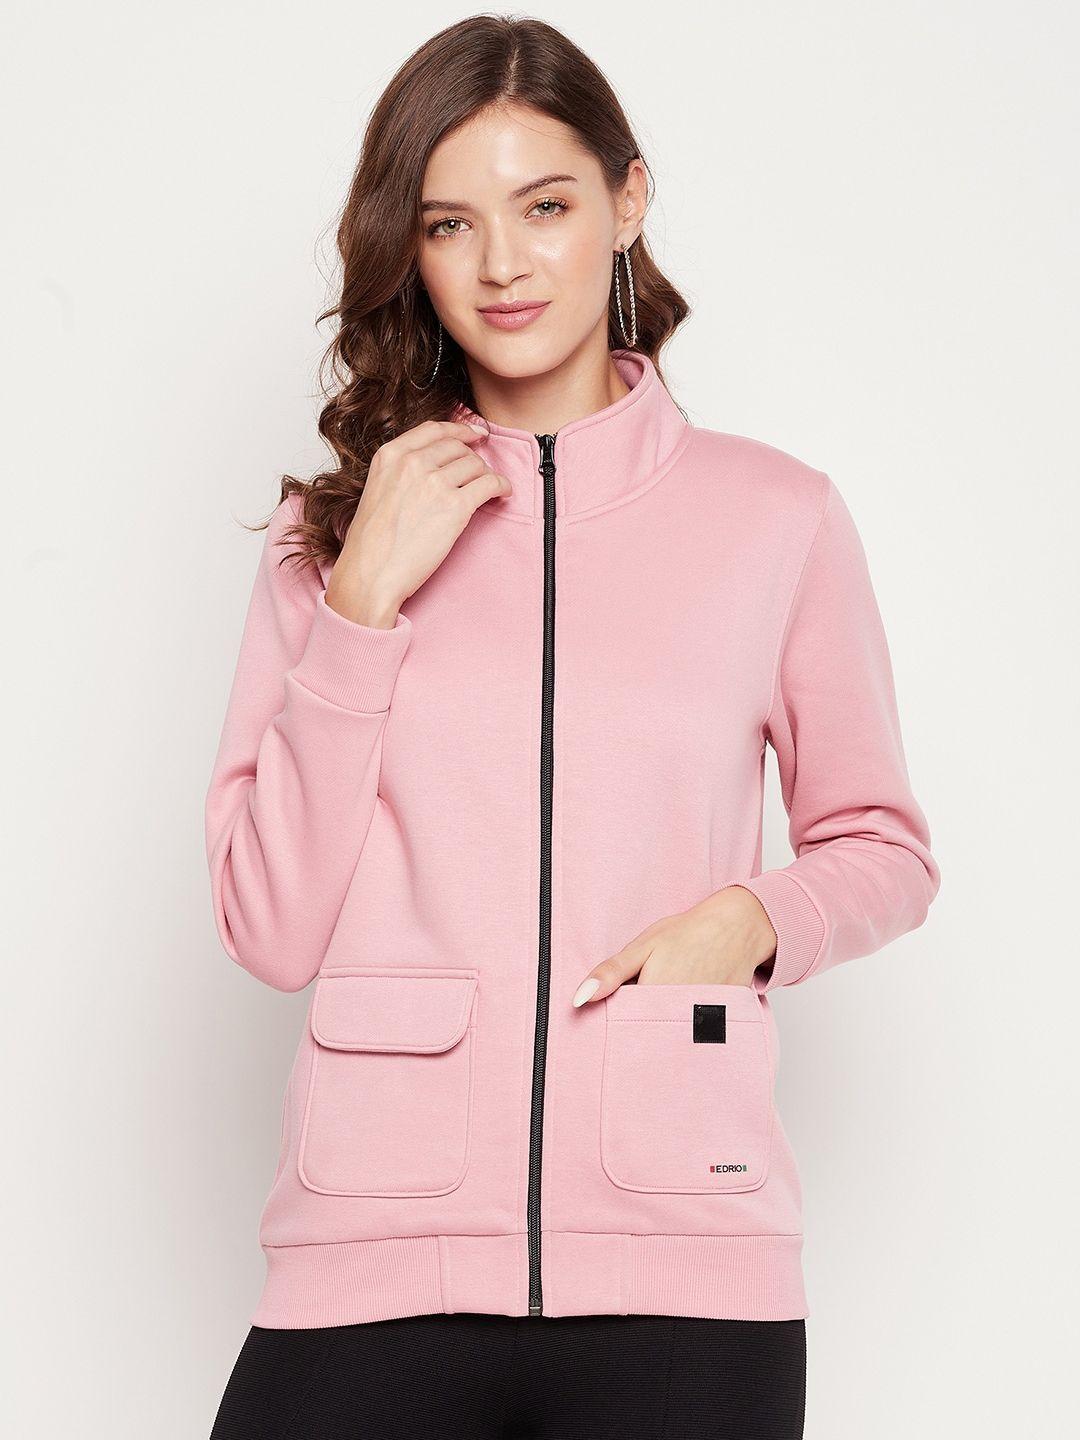 edrio-women-pink-fleece-sweatshirt